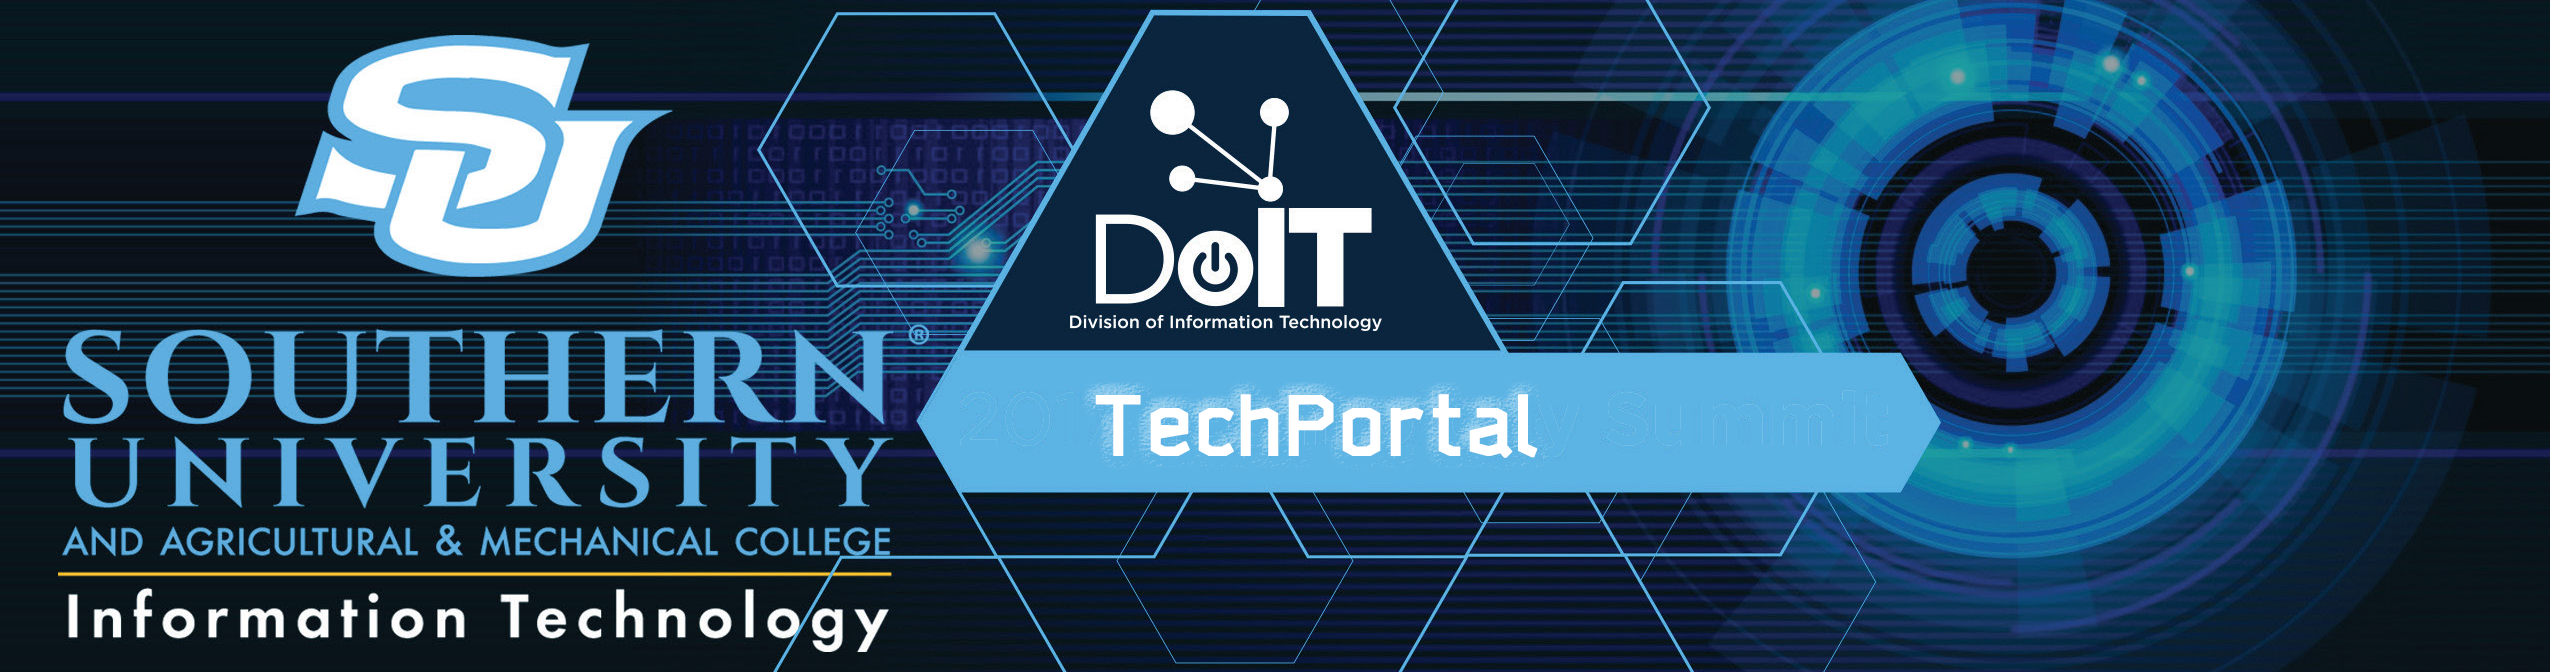 DoIT TechPortal Banner